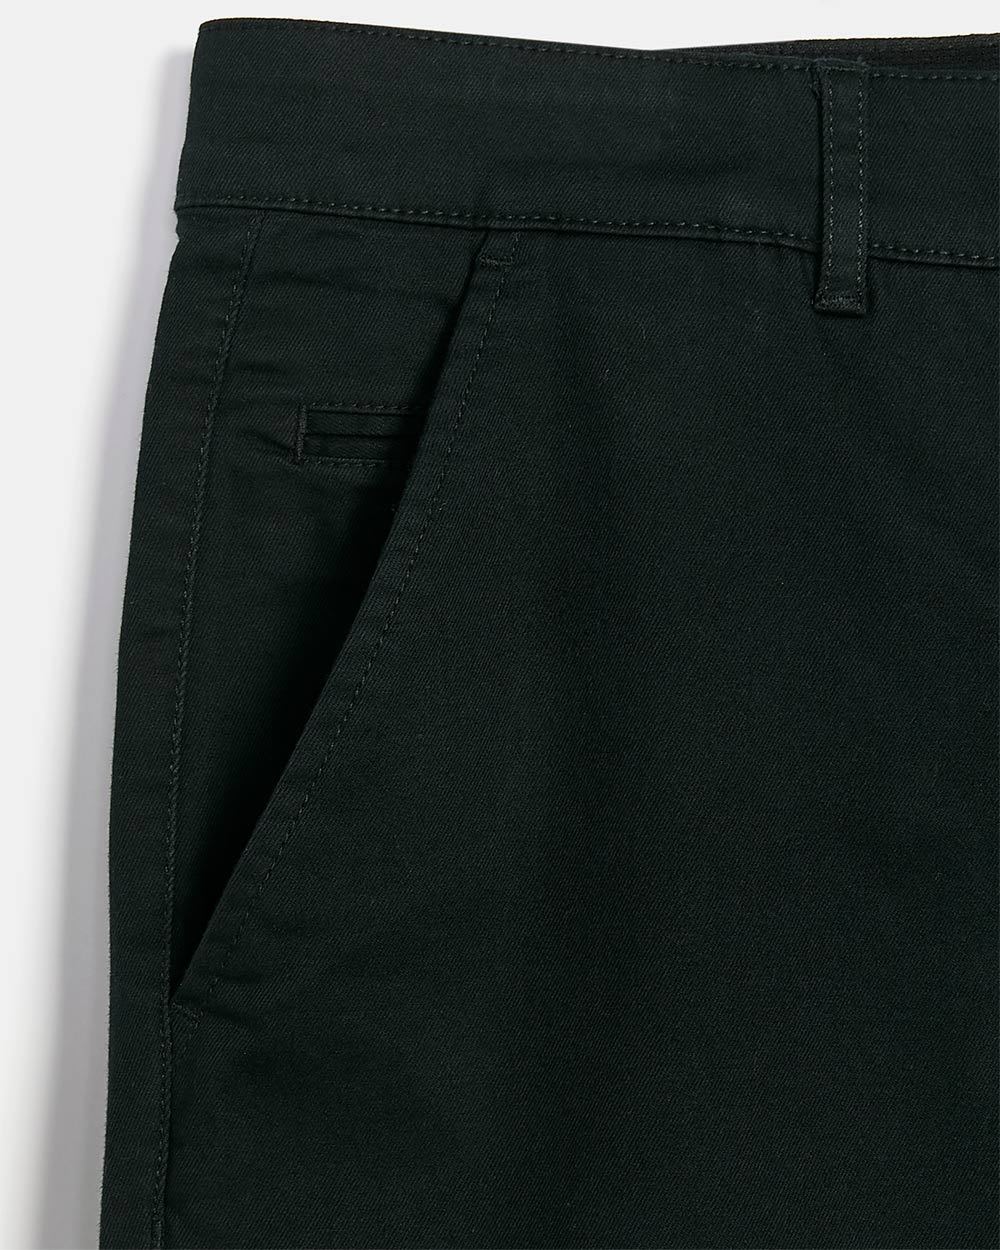 PowerFlexx (R) Chino Shorts - 10.5"